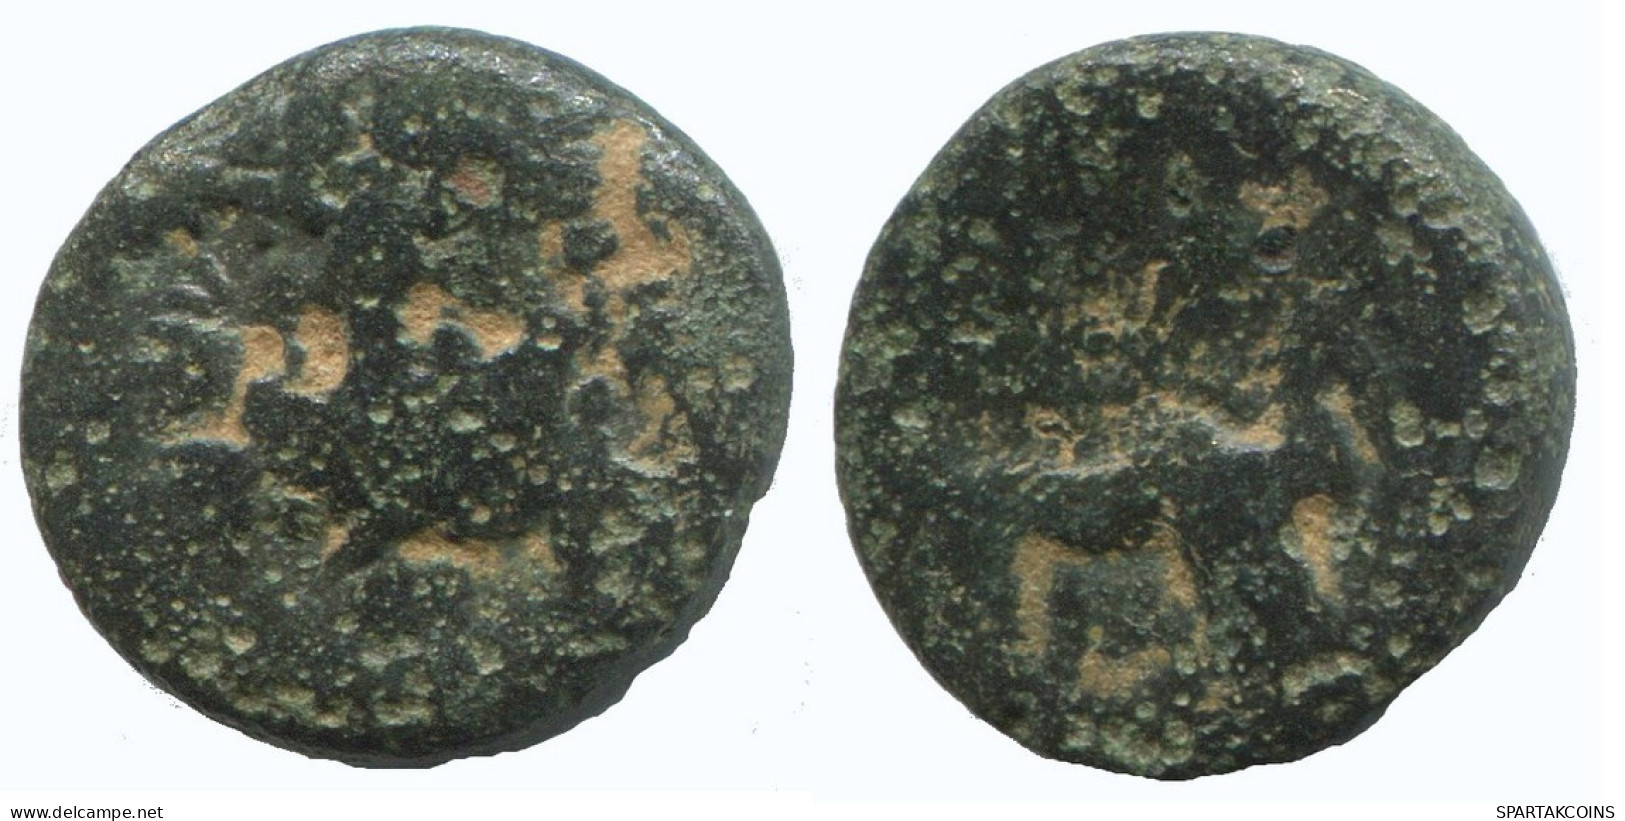 Antike Authentische Original GRIECHISCHE Münze 2g/14mm #NNN1461.9.D.A - Griechische Münzen